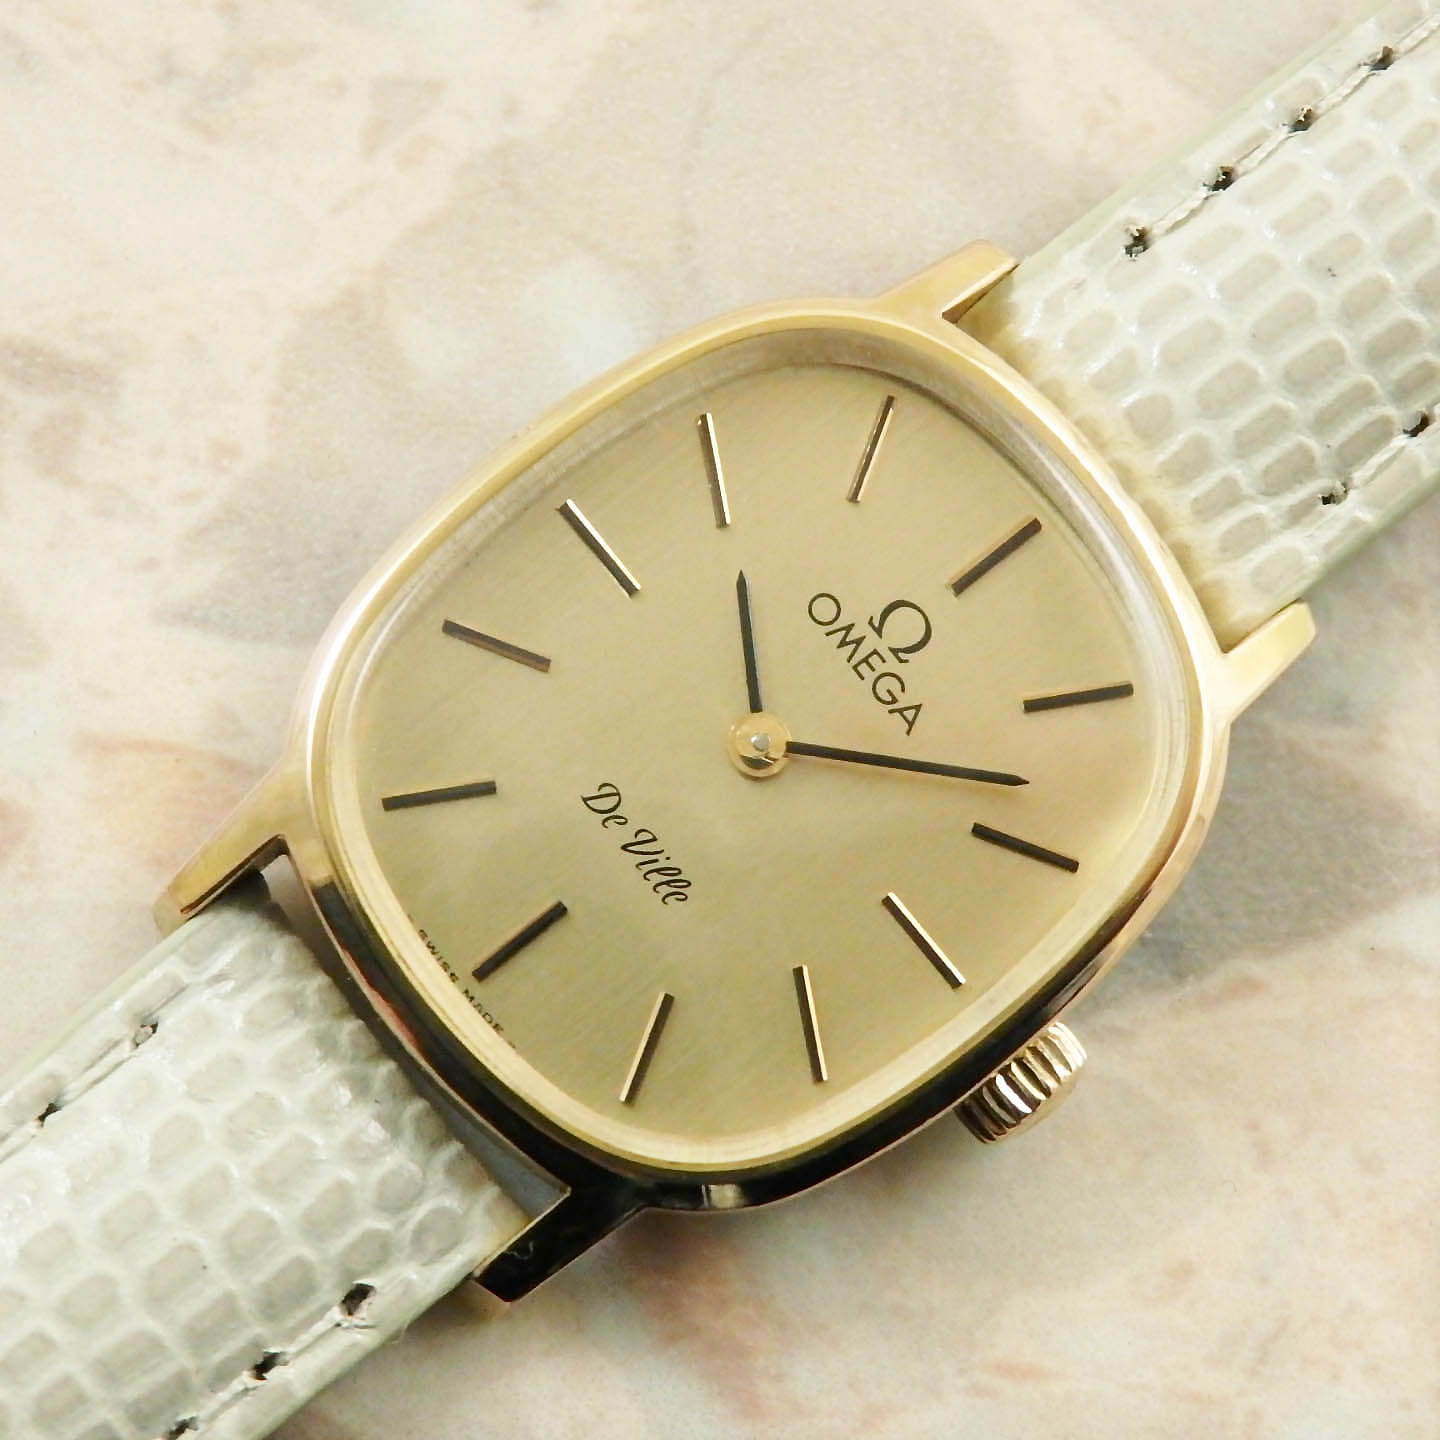 オメガ・OMEGA レディースサイズ アンティーク時計・腕時計 1979年 ゴールド・金